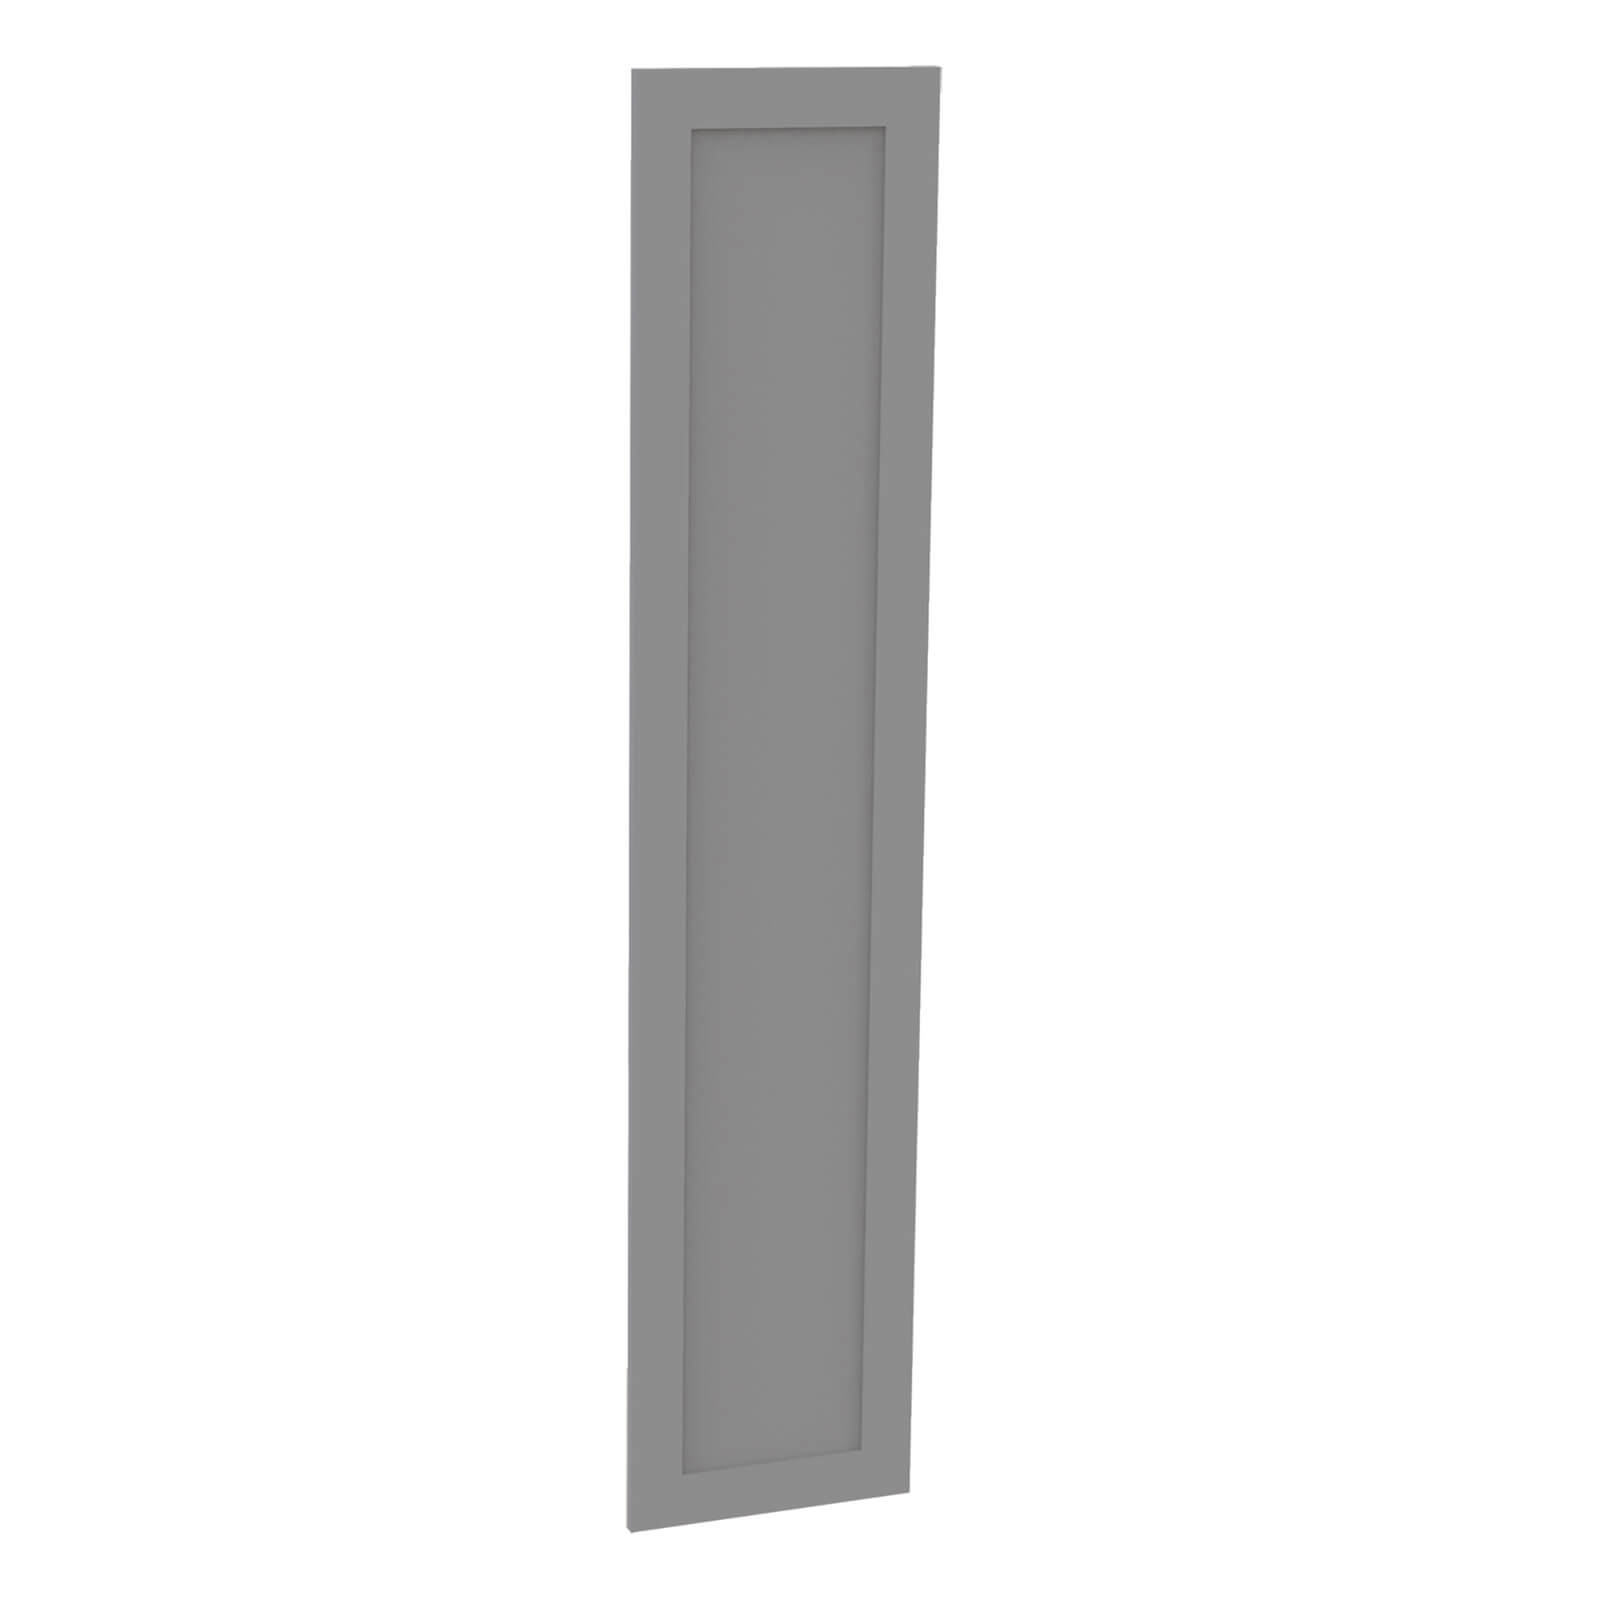 Fitted Bedroom Shaker Wardrobe Door - Grey